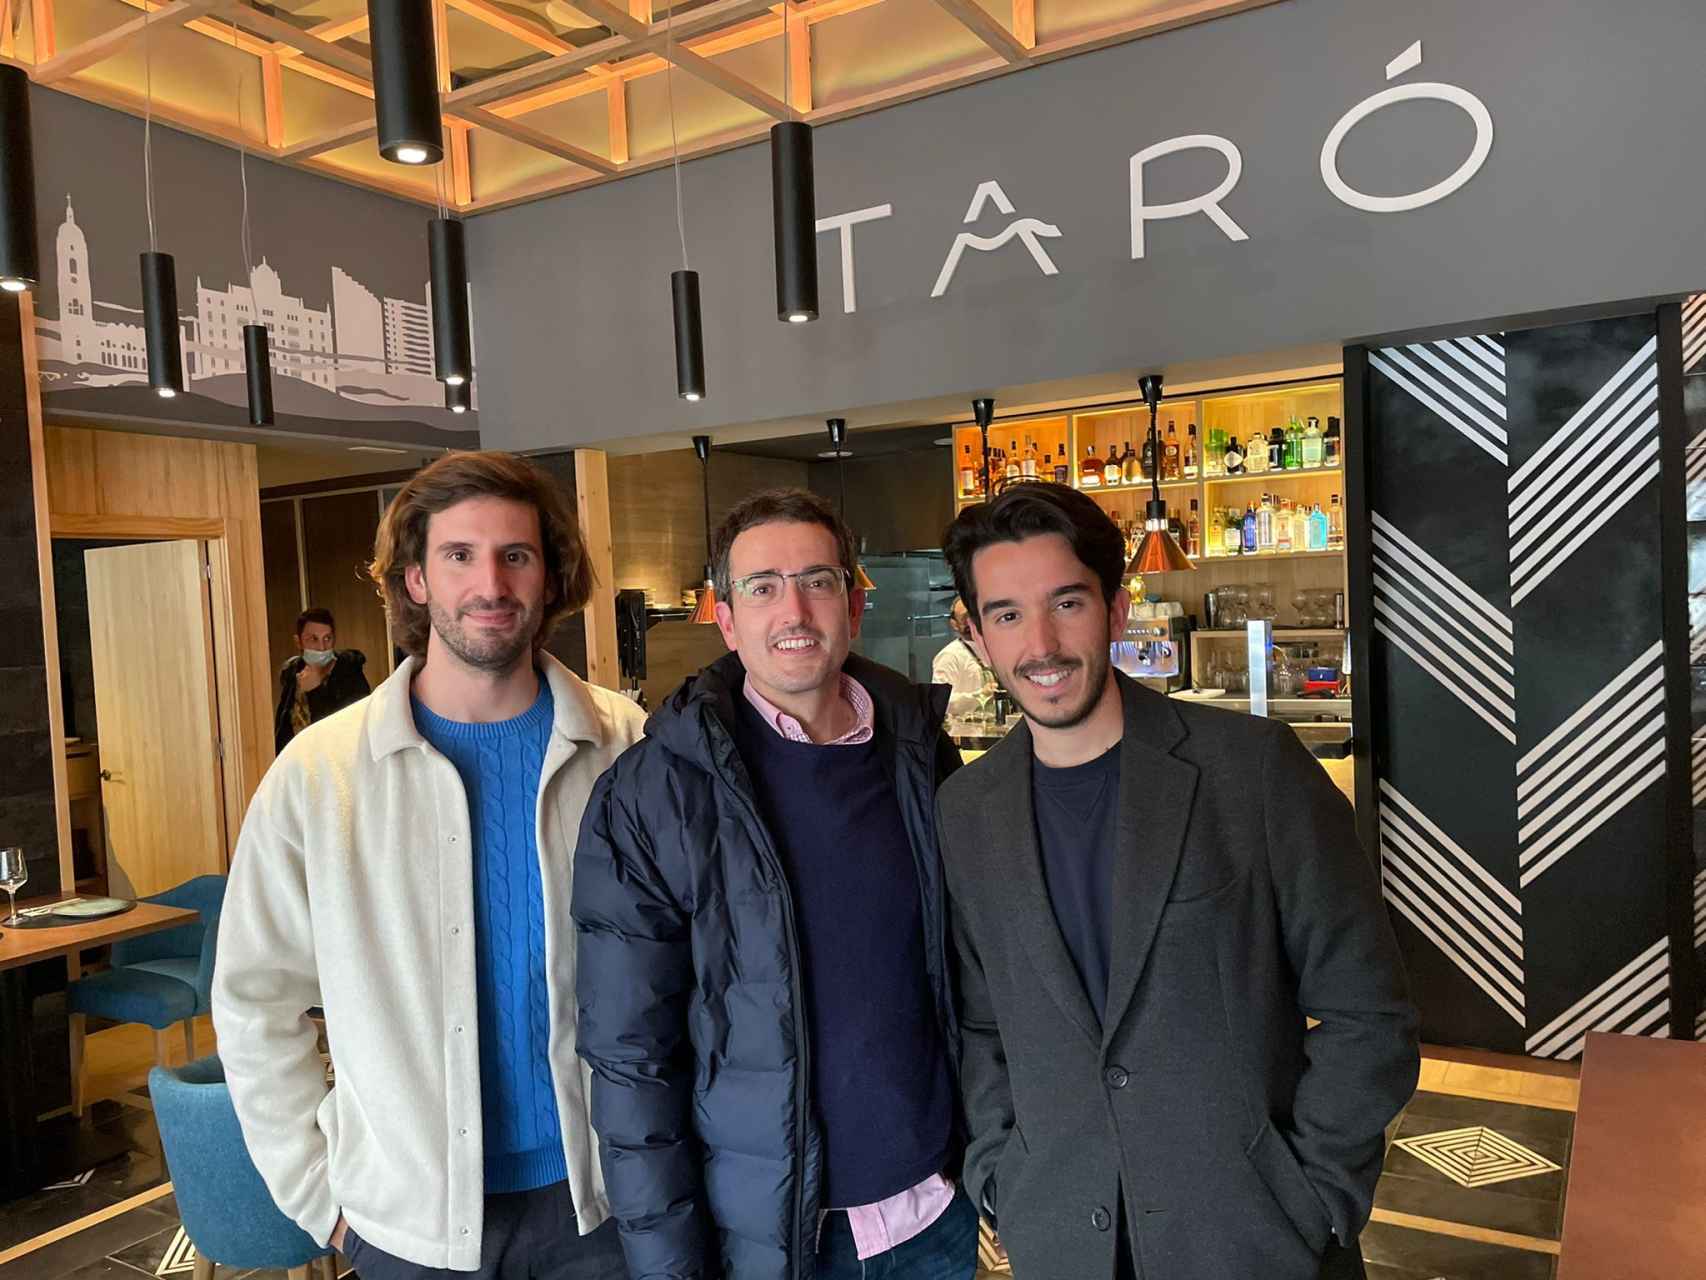 De izquierda a derecha, Unai Pardo Elordi, Jorge Bueno y Cayetano Villodres en Taró Restaurante.